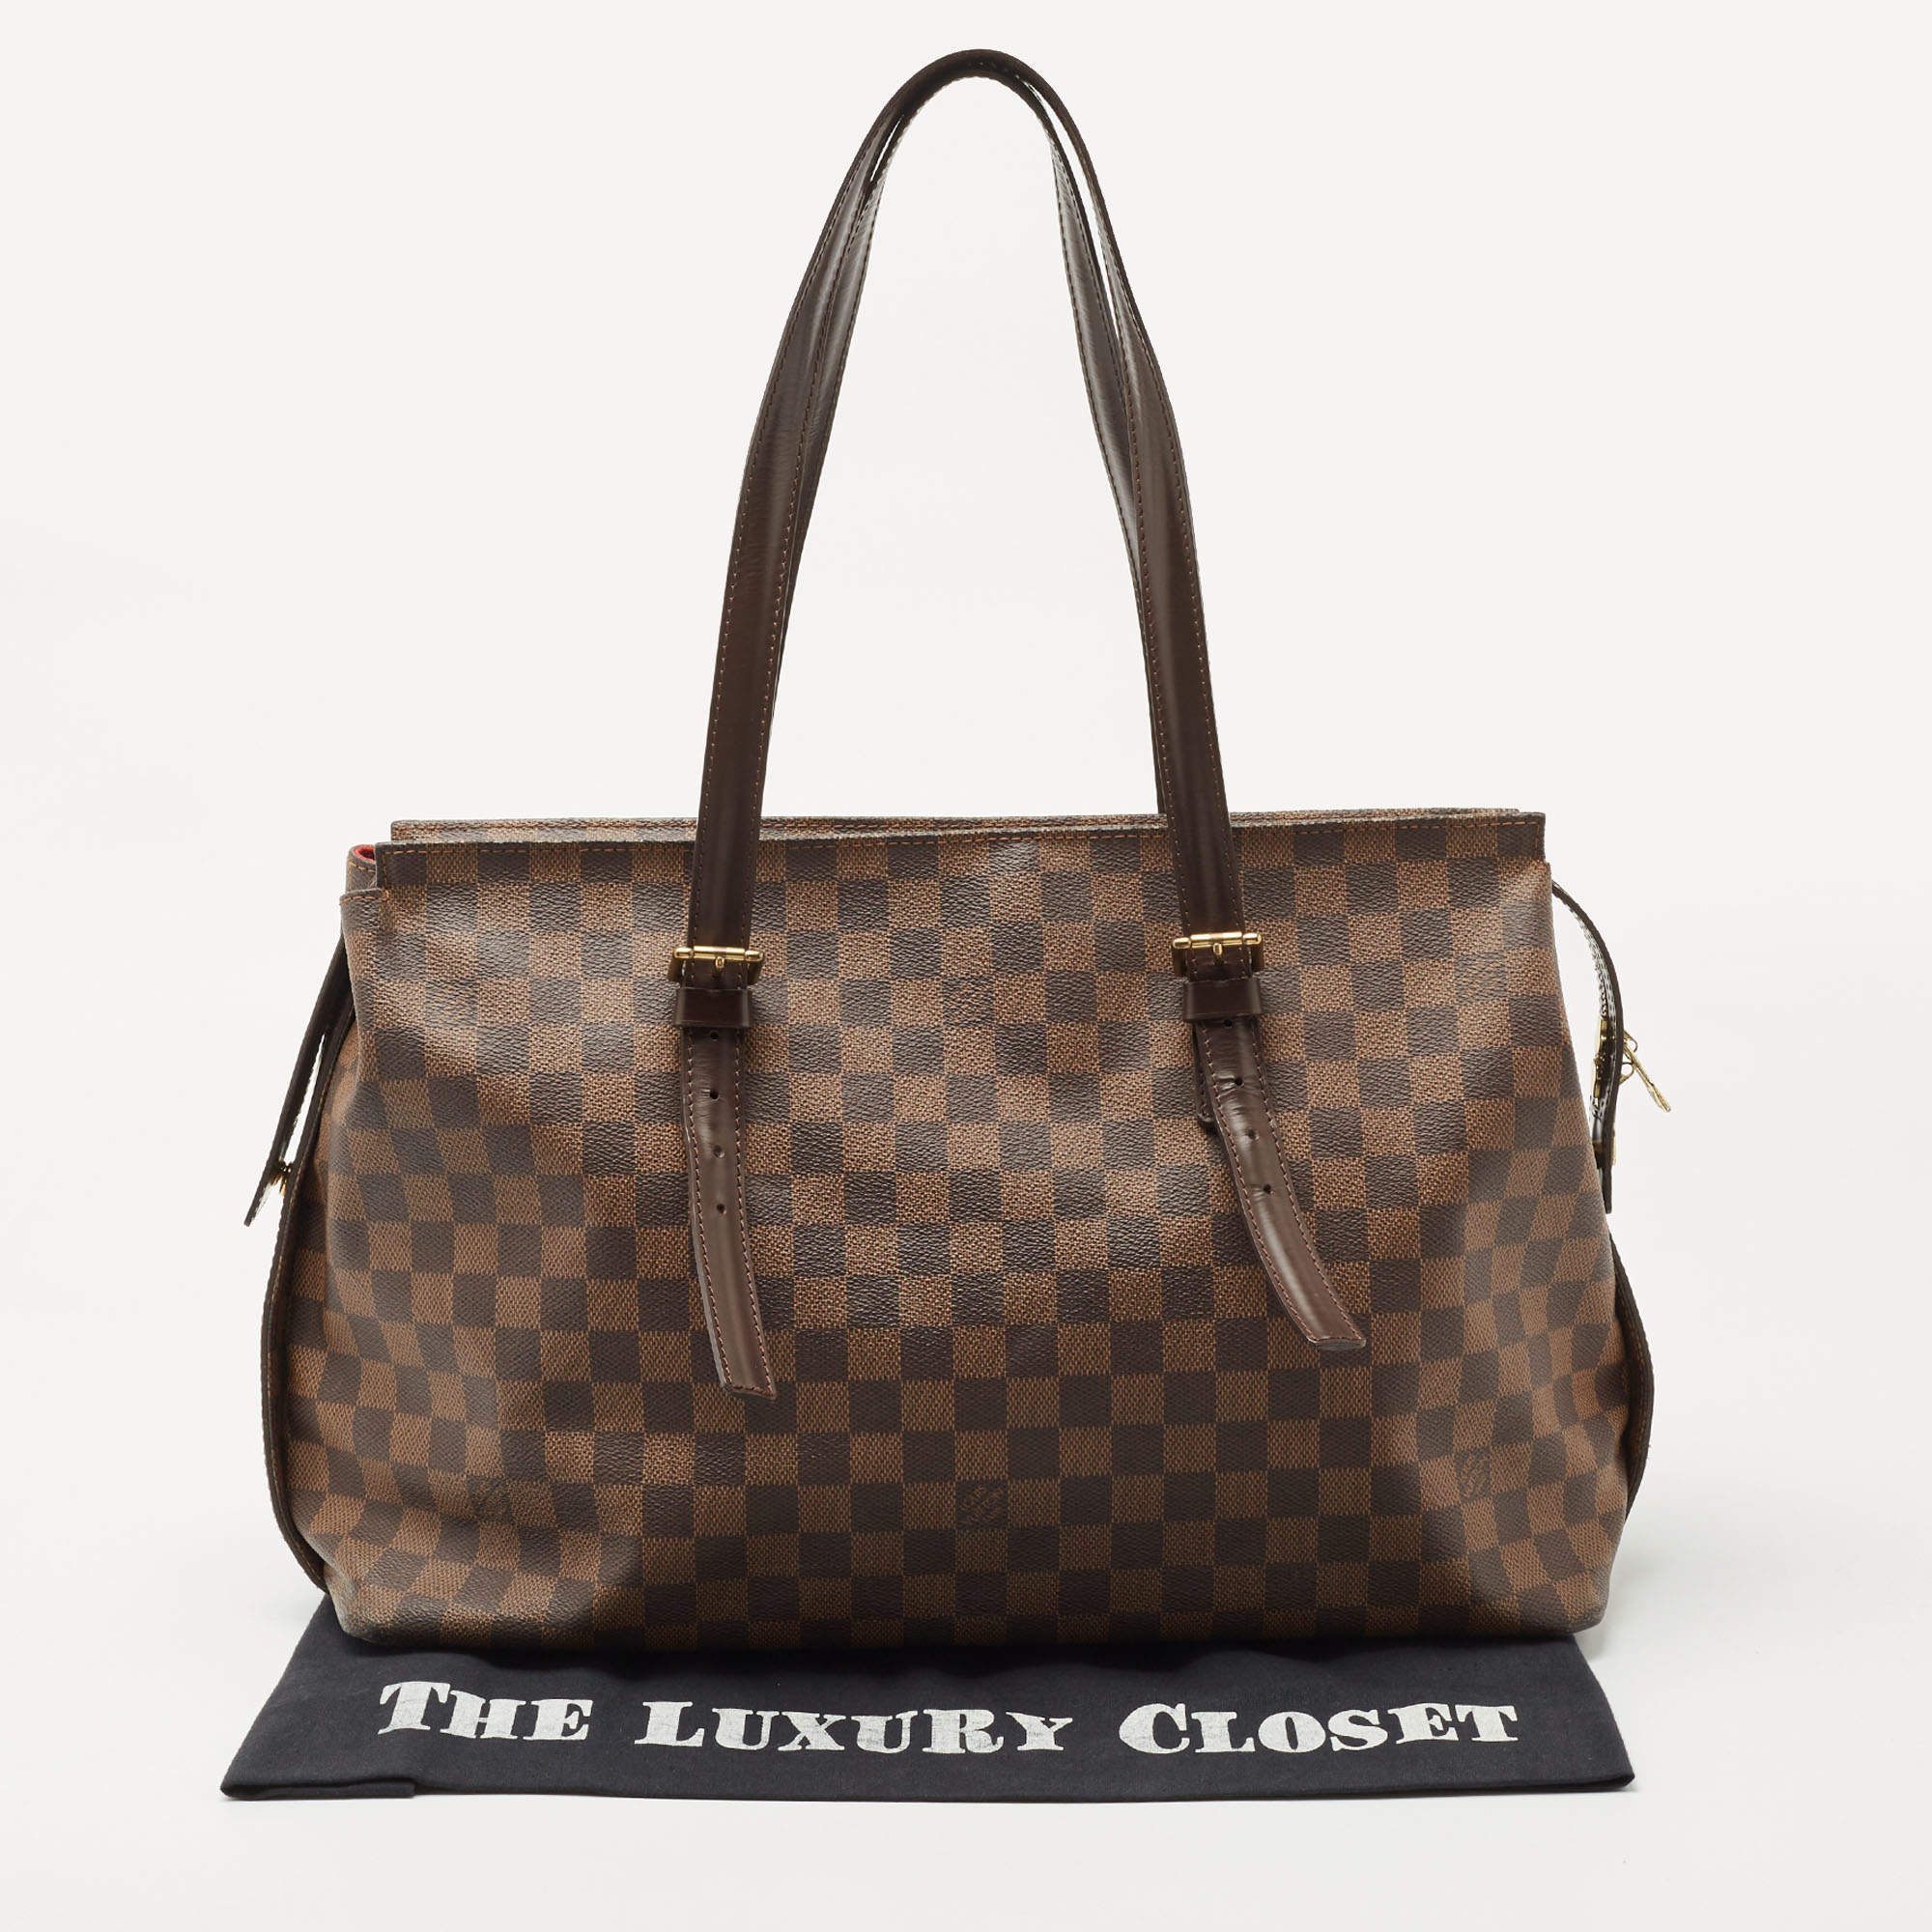 Louis Vuitton Damier Ebene Canvas Chelsea Bag Louis Vuitton